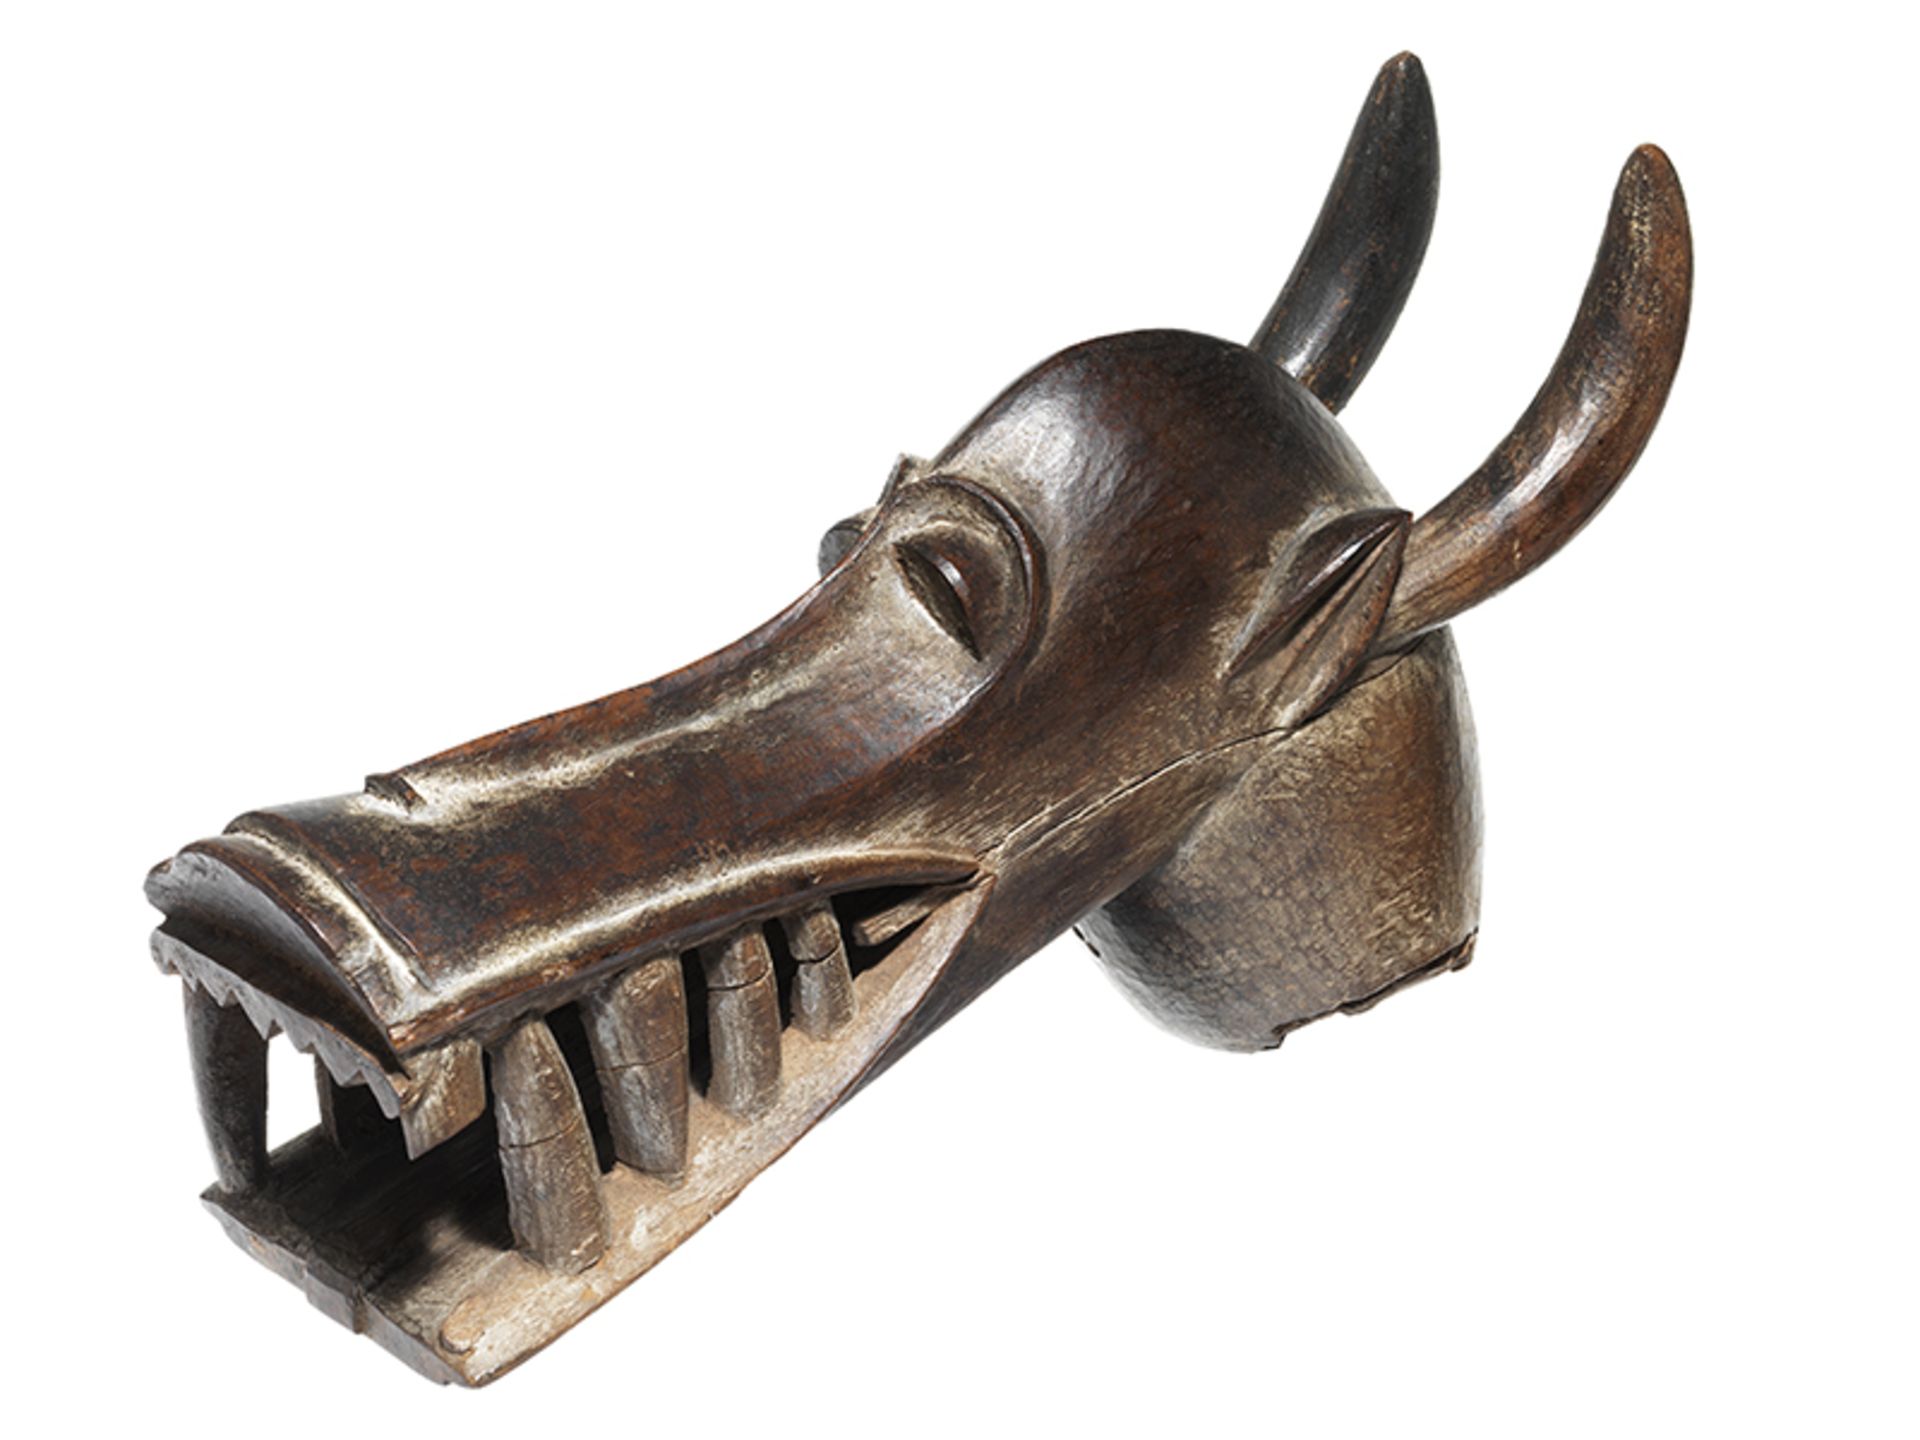 Kponyungo-Maske Höhe inkl. Stand: 37,7 cm. Volk der Senufo, Elfenbeinküste. Die Maske wurde getragen - Bild 2 aus 6